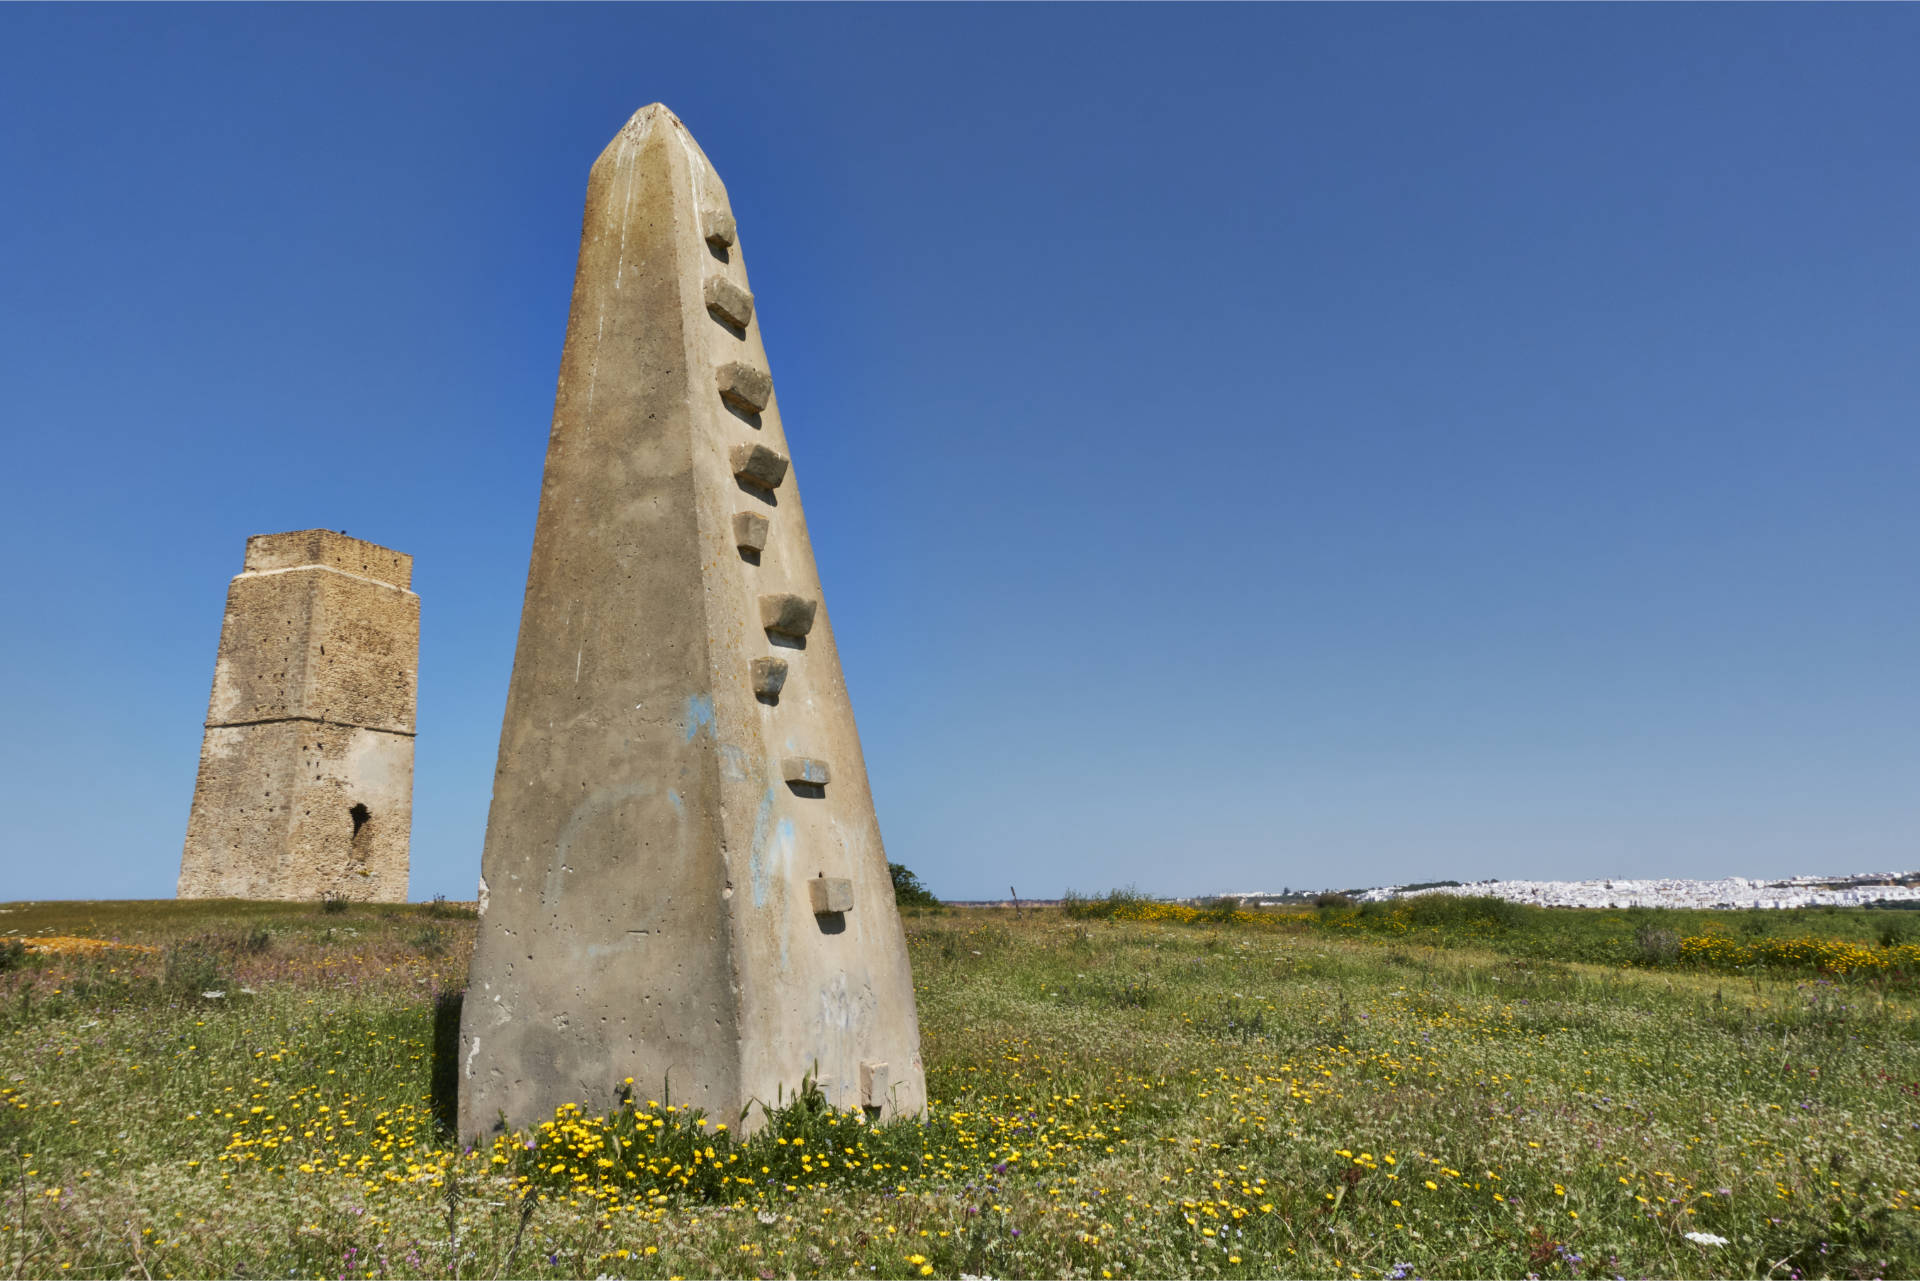 Torre de Castilnovo und Pfeiler für die Netzleinen der Almadraba.